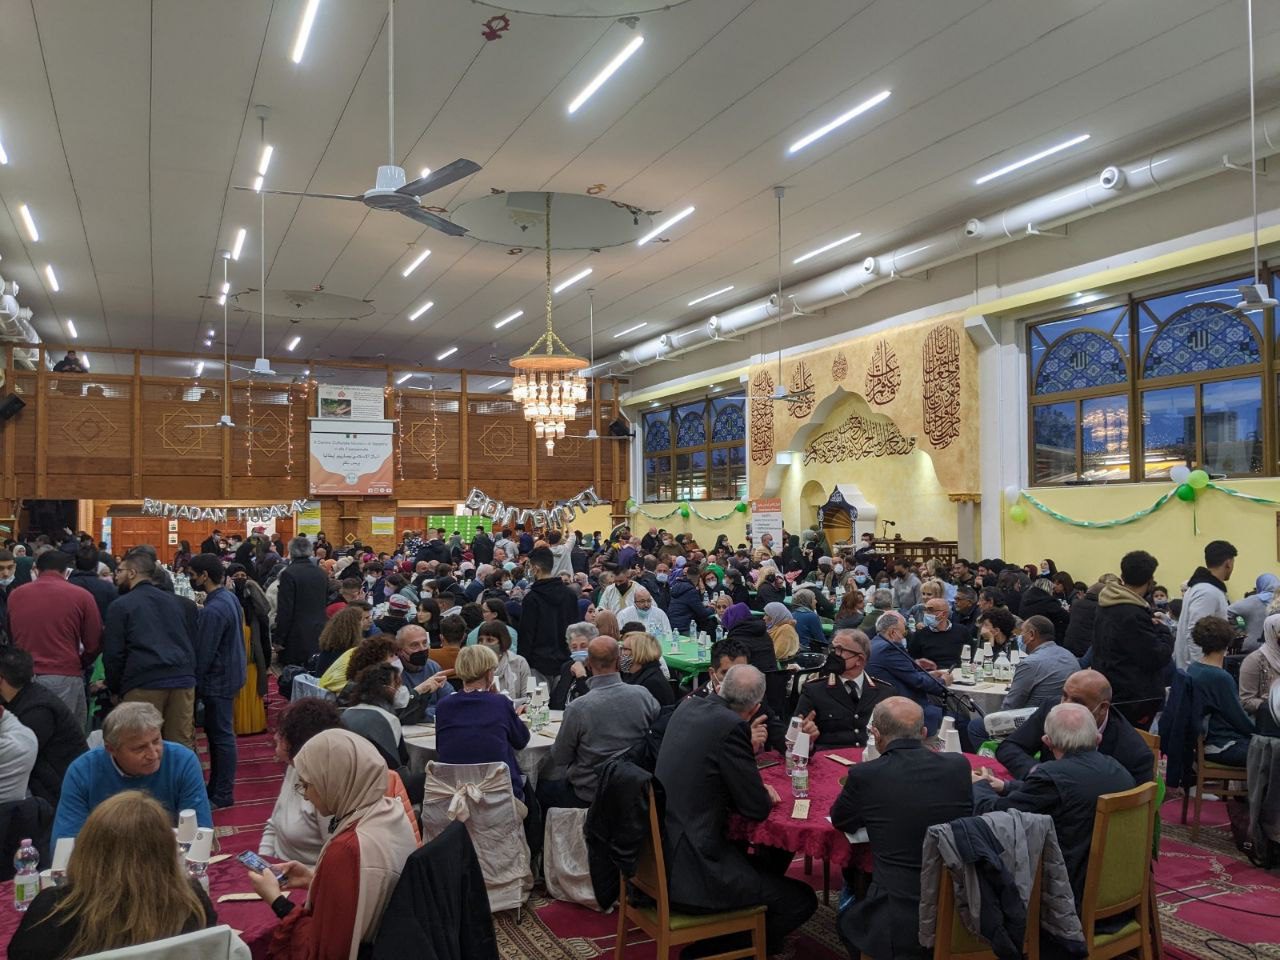 20220423 centro islamico cena iftar (3)